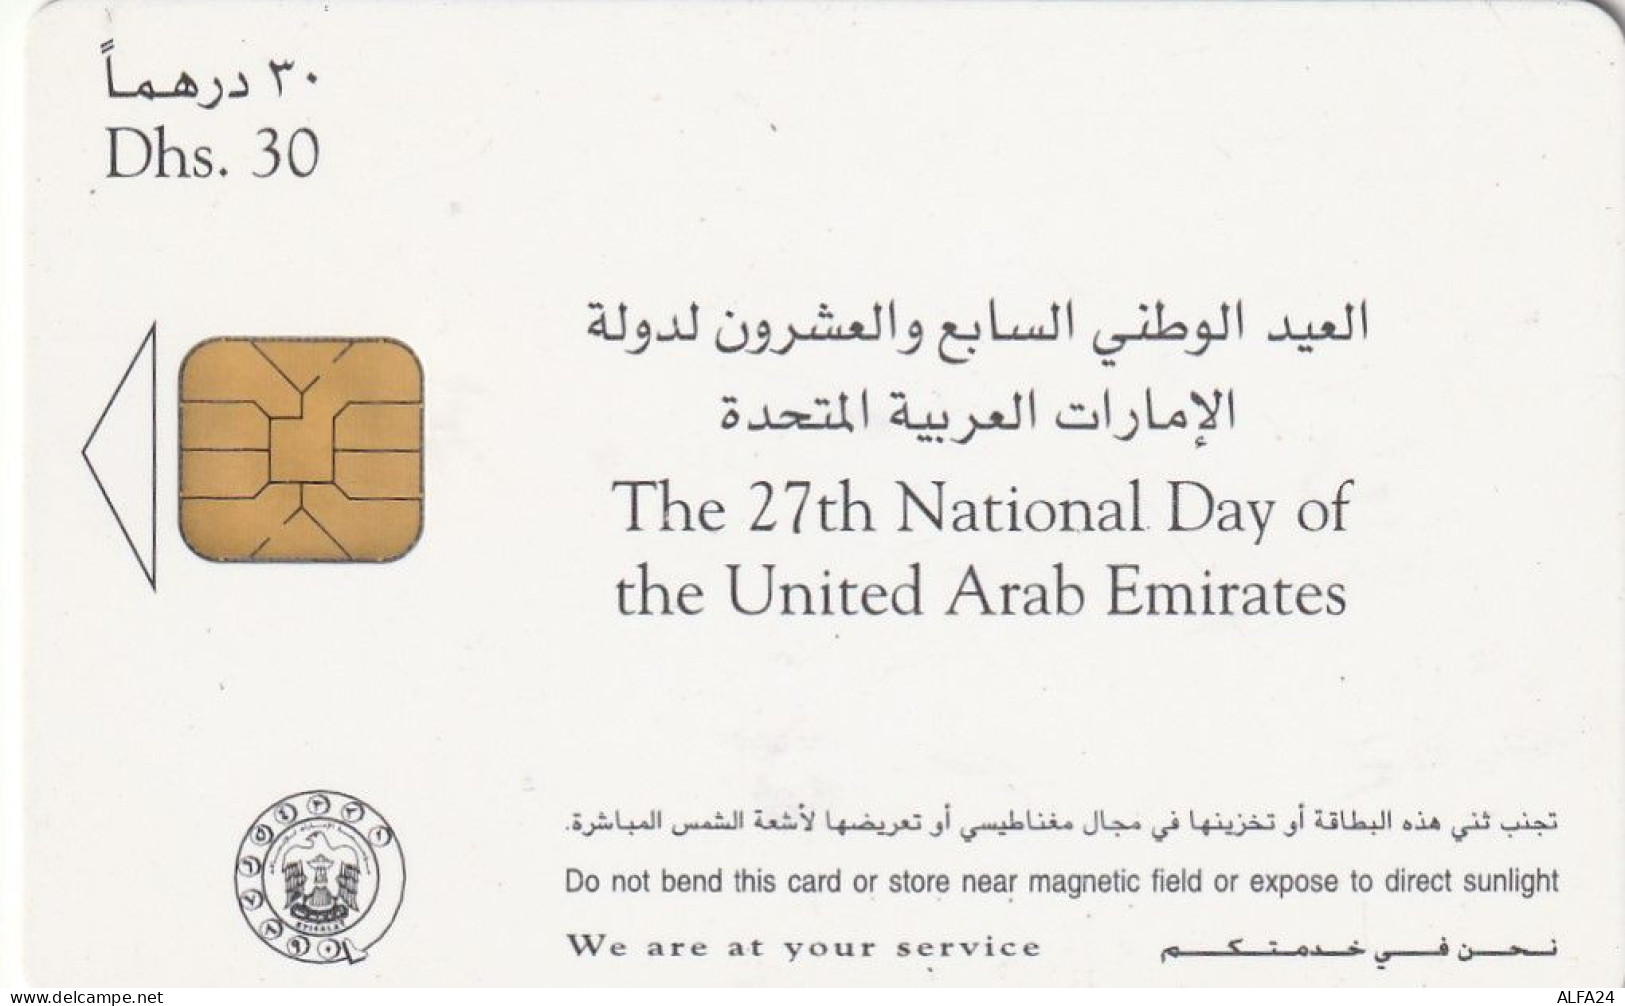 PHONE CARD EMIRATI ARABI  (E23.23.5 - Ver. Arab. Emirate